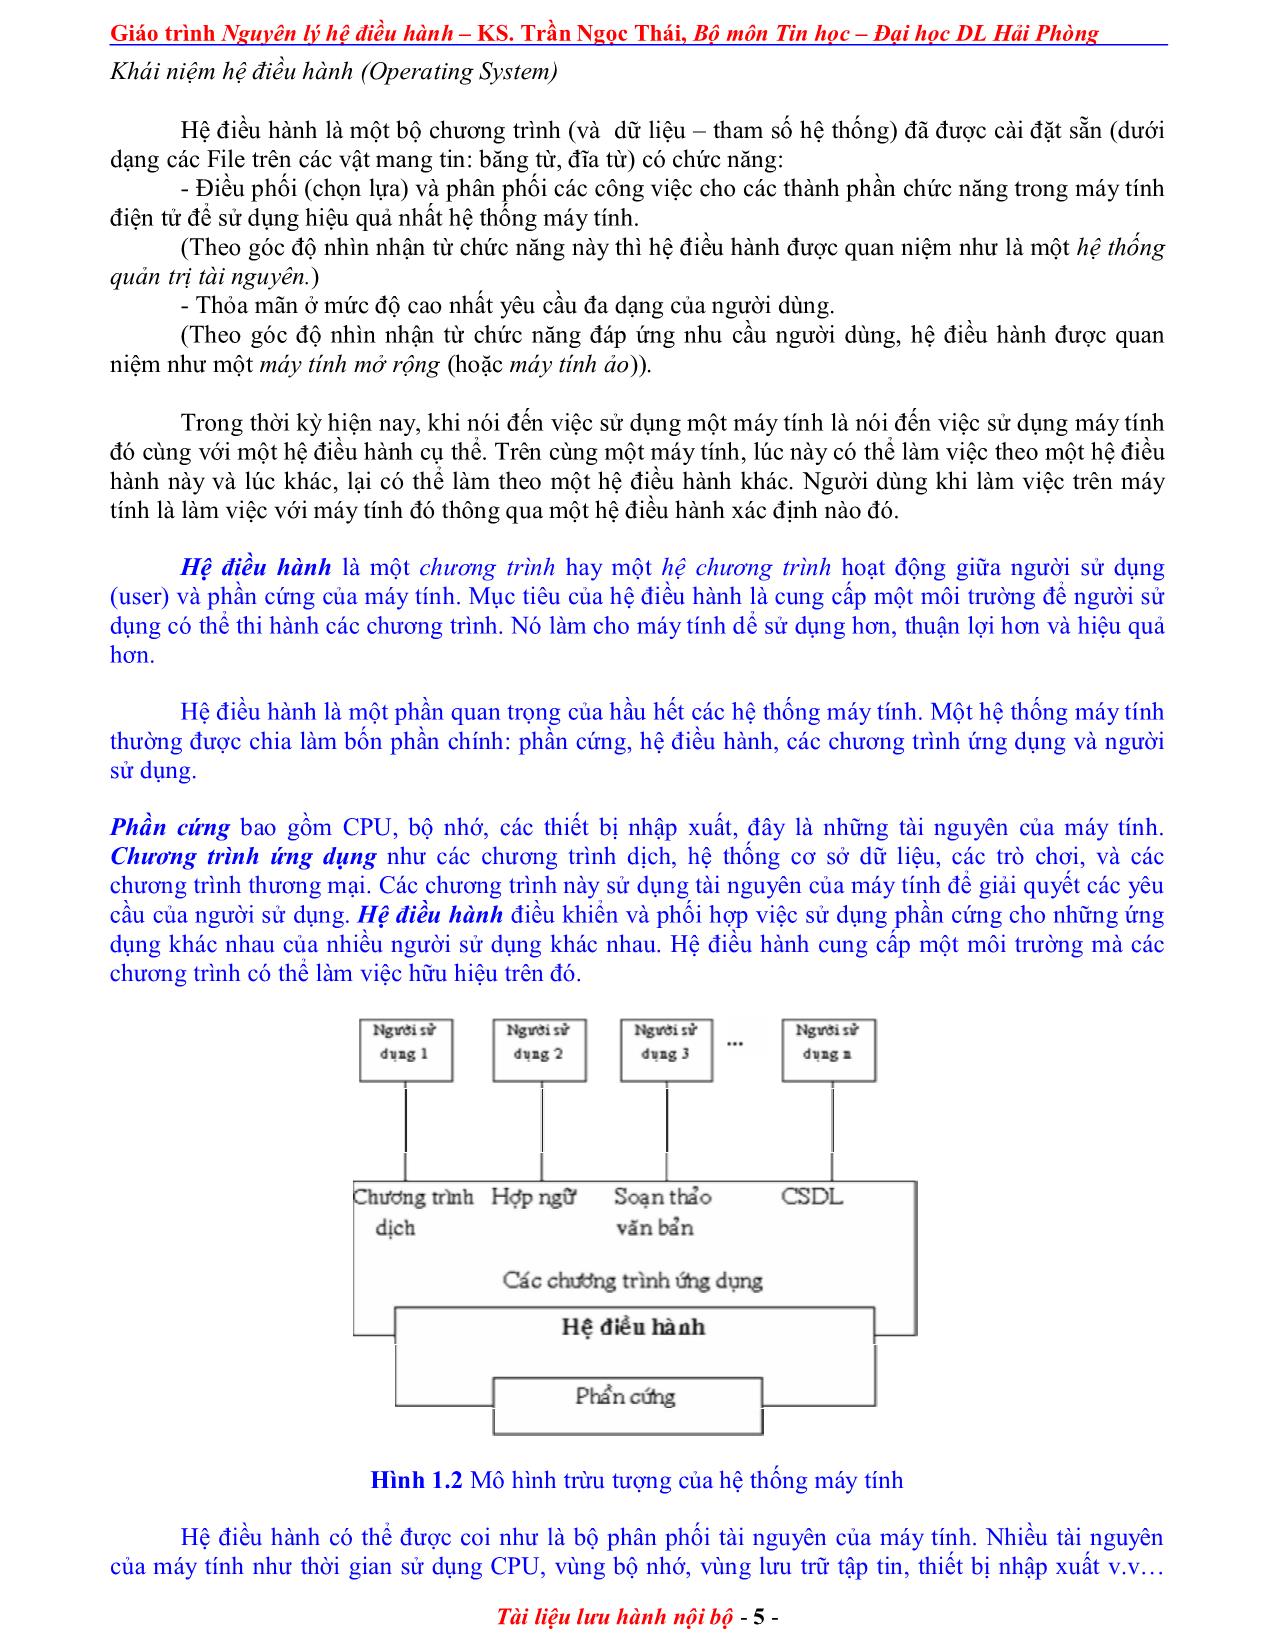 Giáo trình Nguyên lý điều hành (Phần 1) trang 5